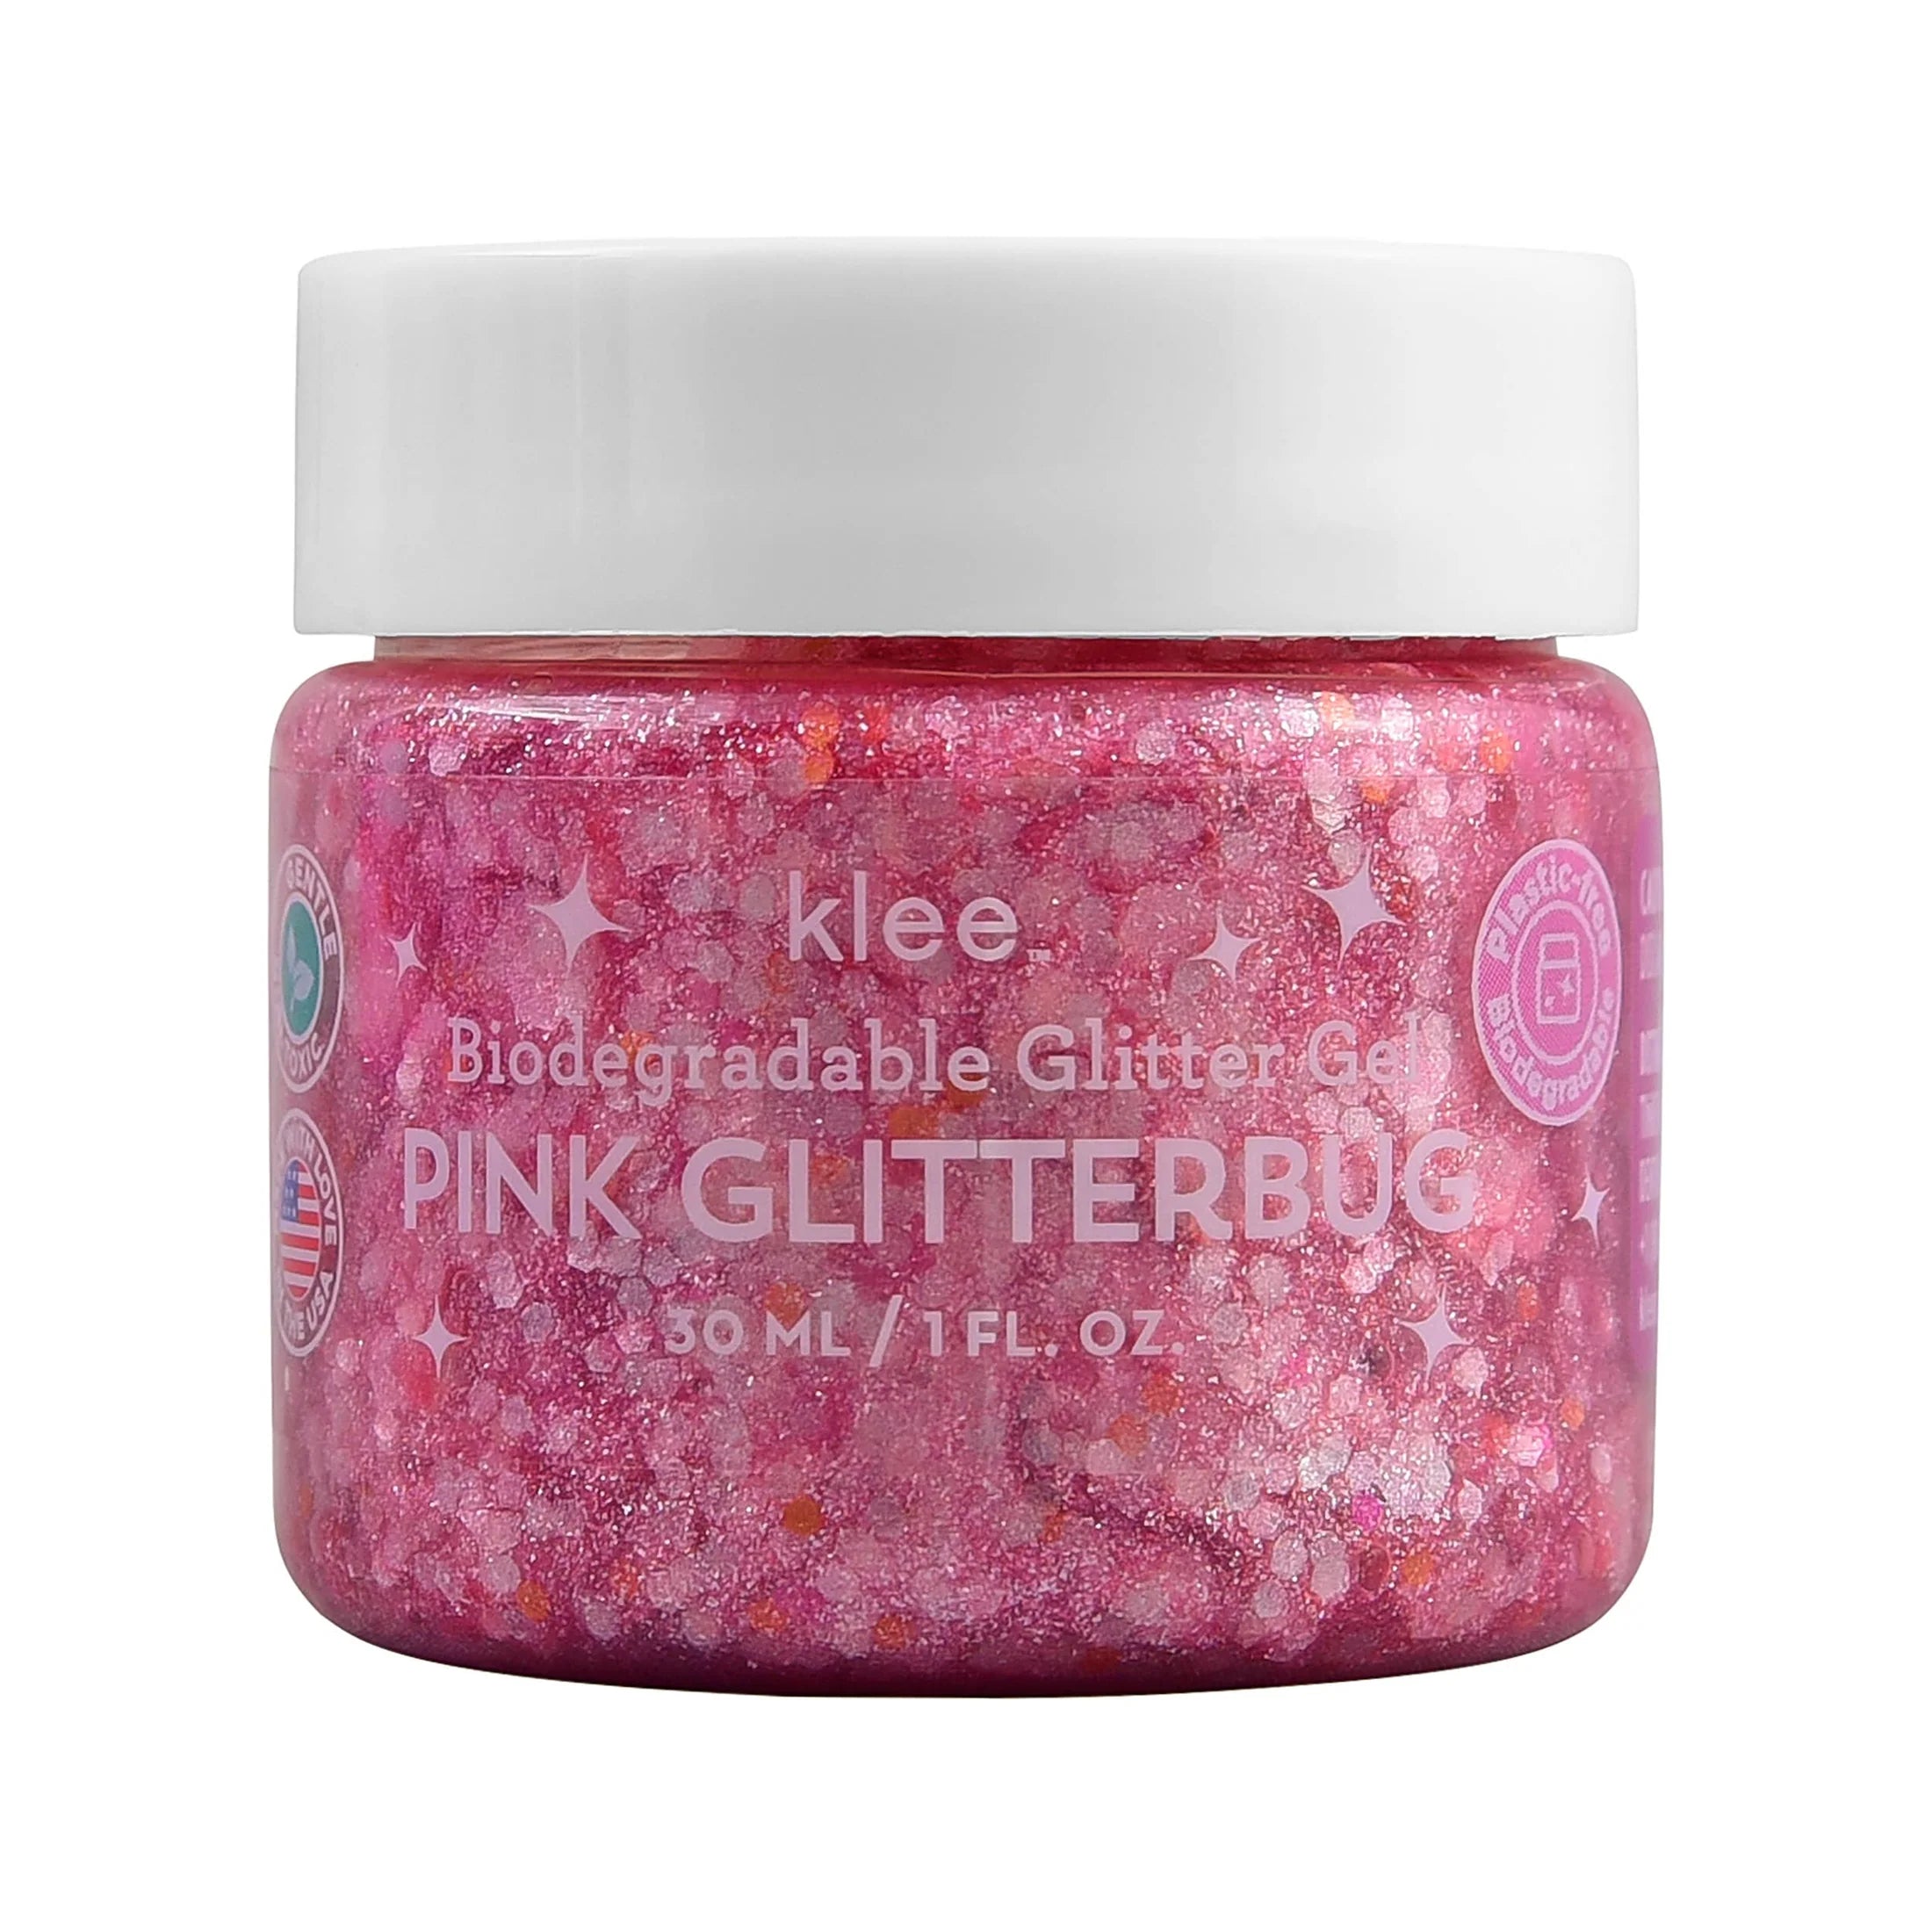 Pink Glitterbug - Klee Biodegradable Glitter Gel, 1 oz - Twinkle Twinkle Little One